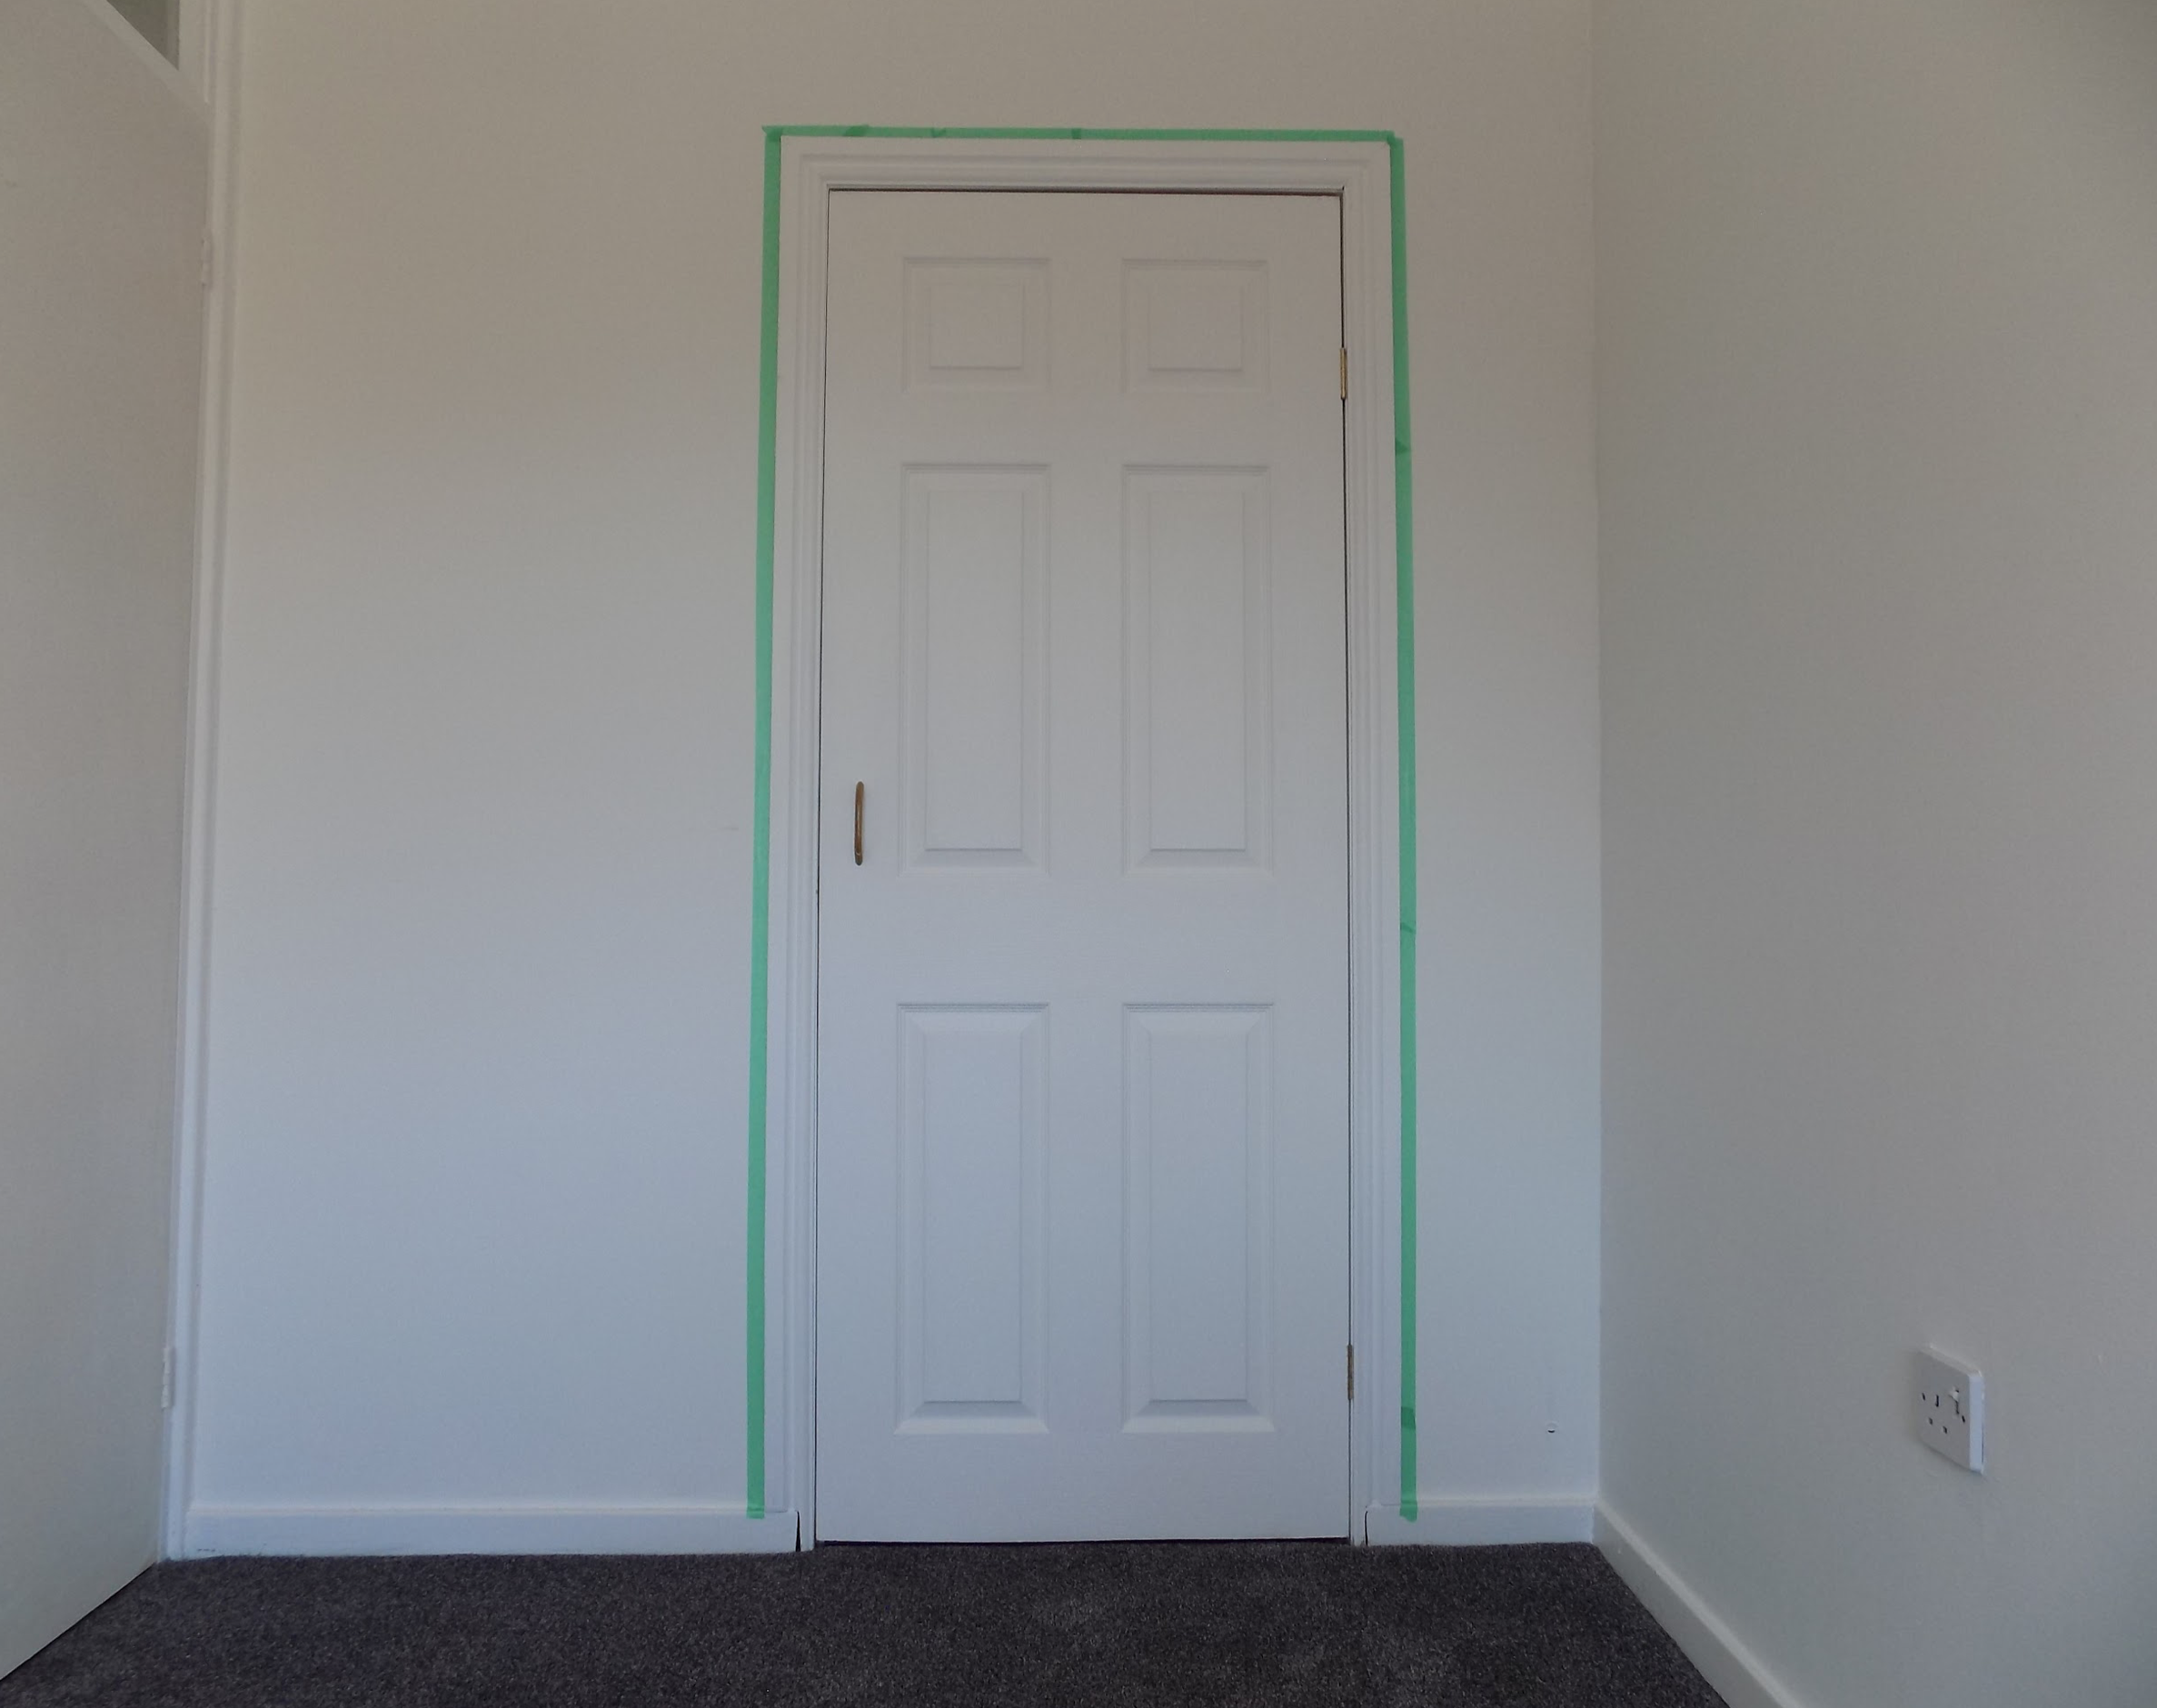 empty room, door tape around edges